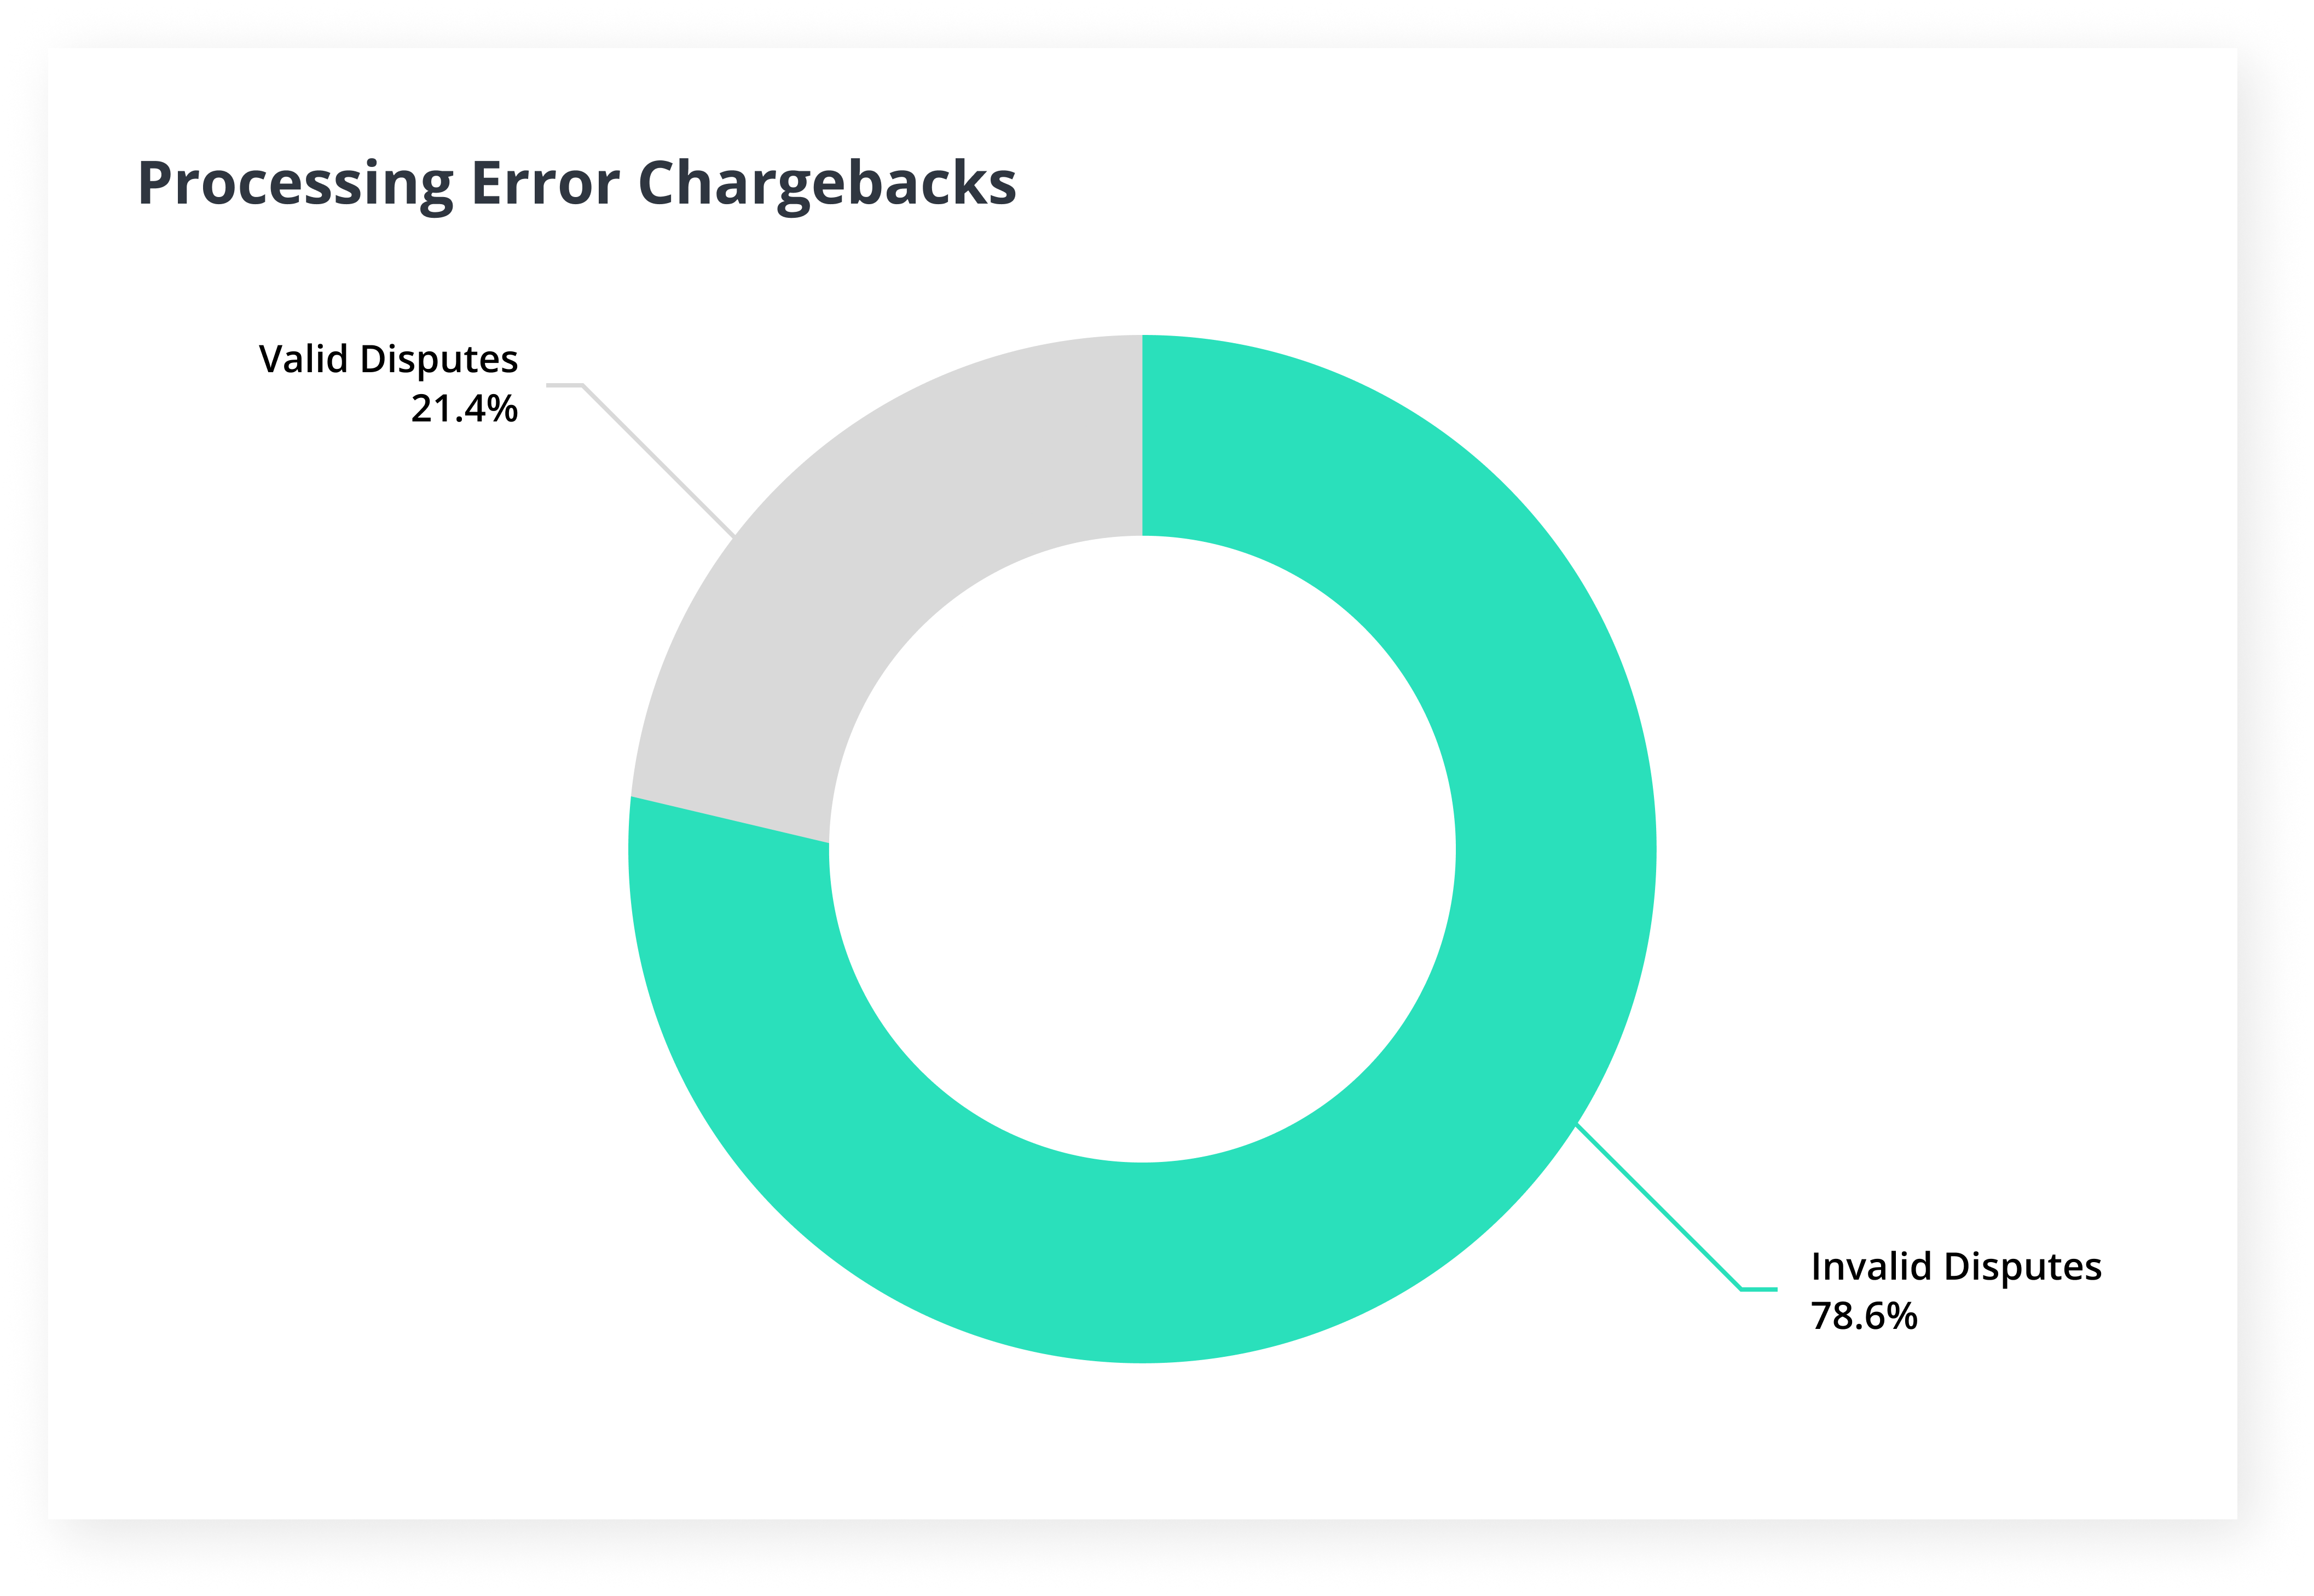 Processing error chargebacks valid vs invalid